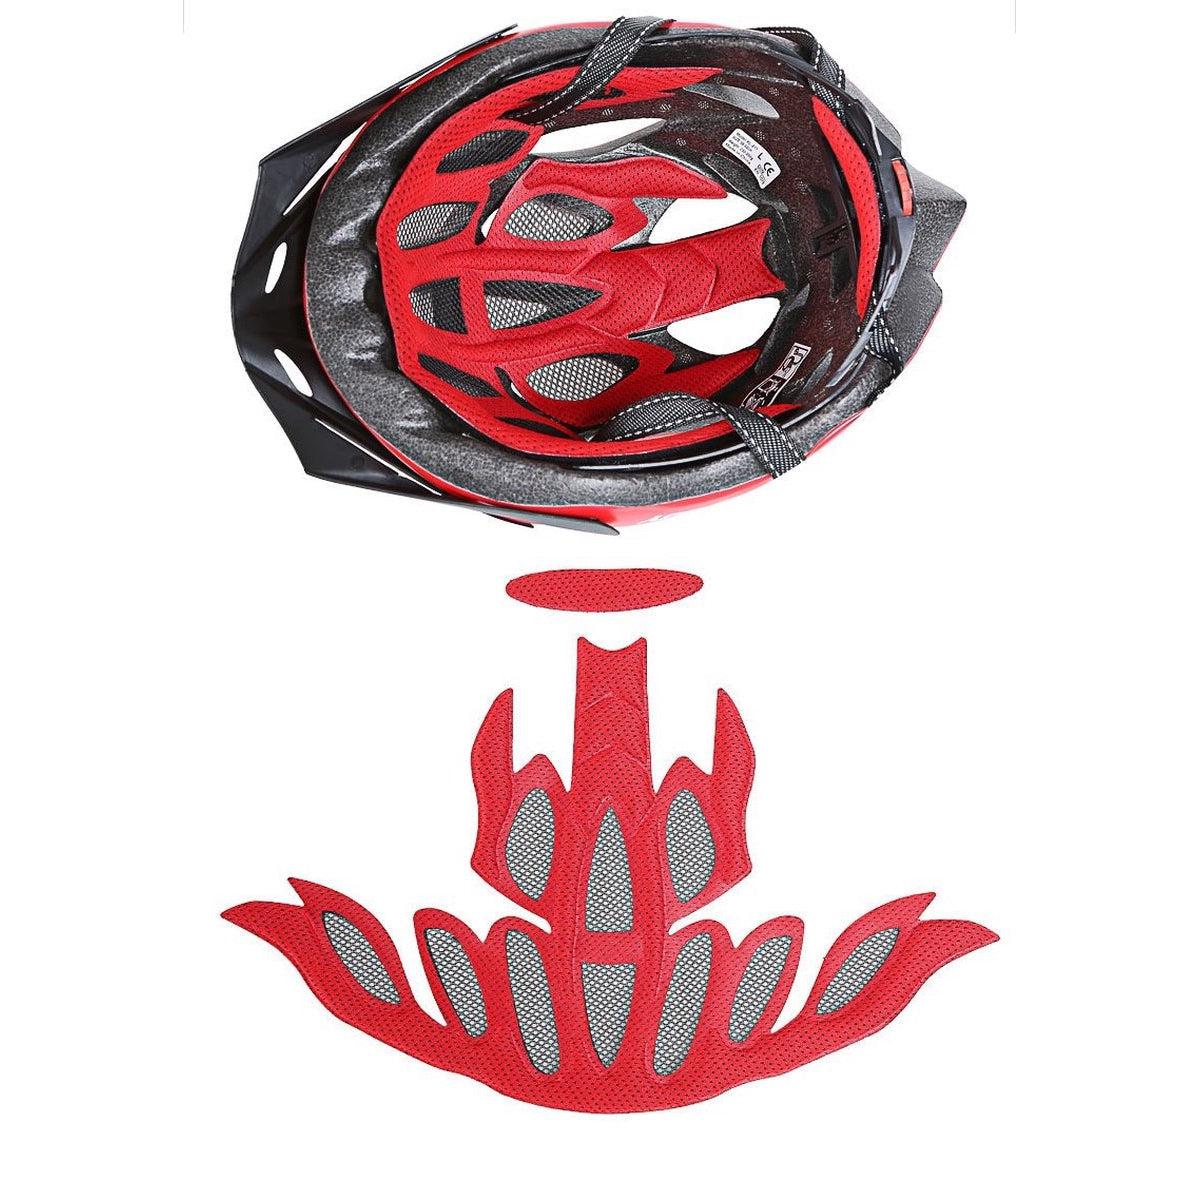 Mountainbike helm met lamp